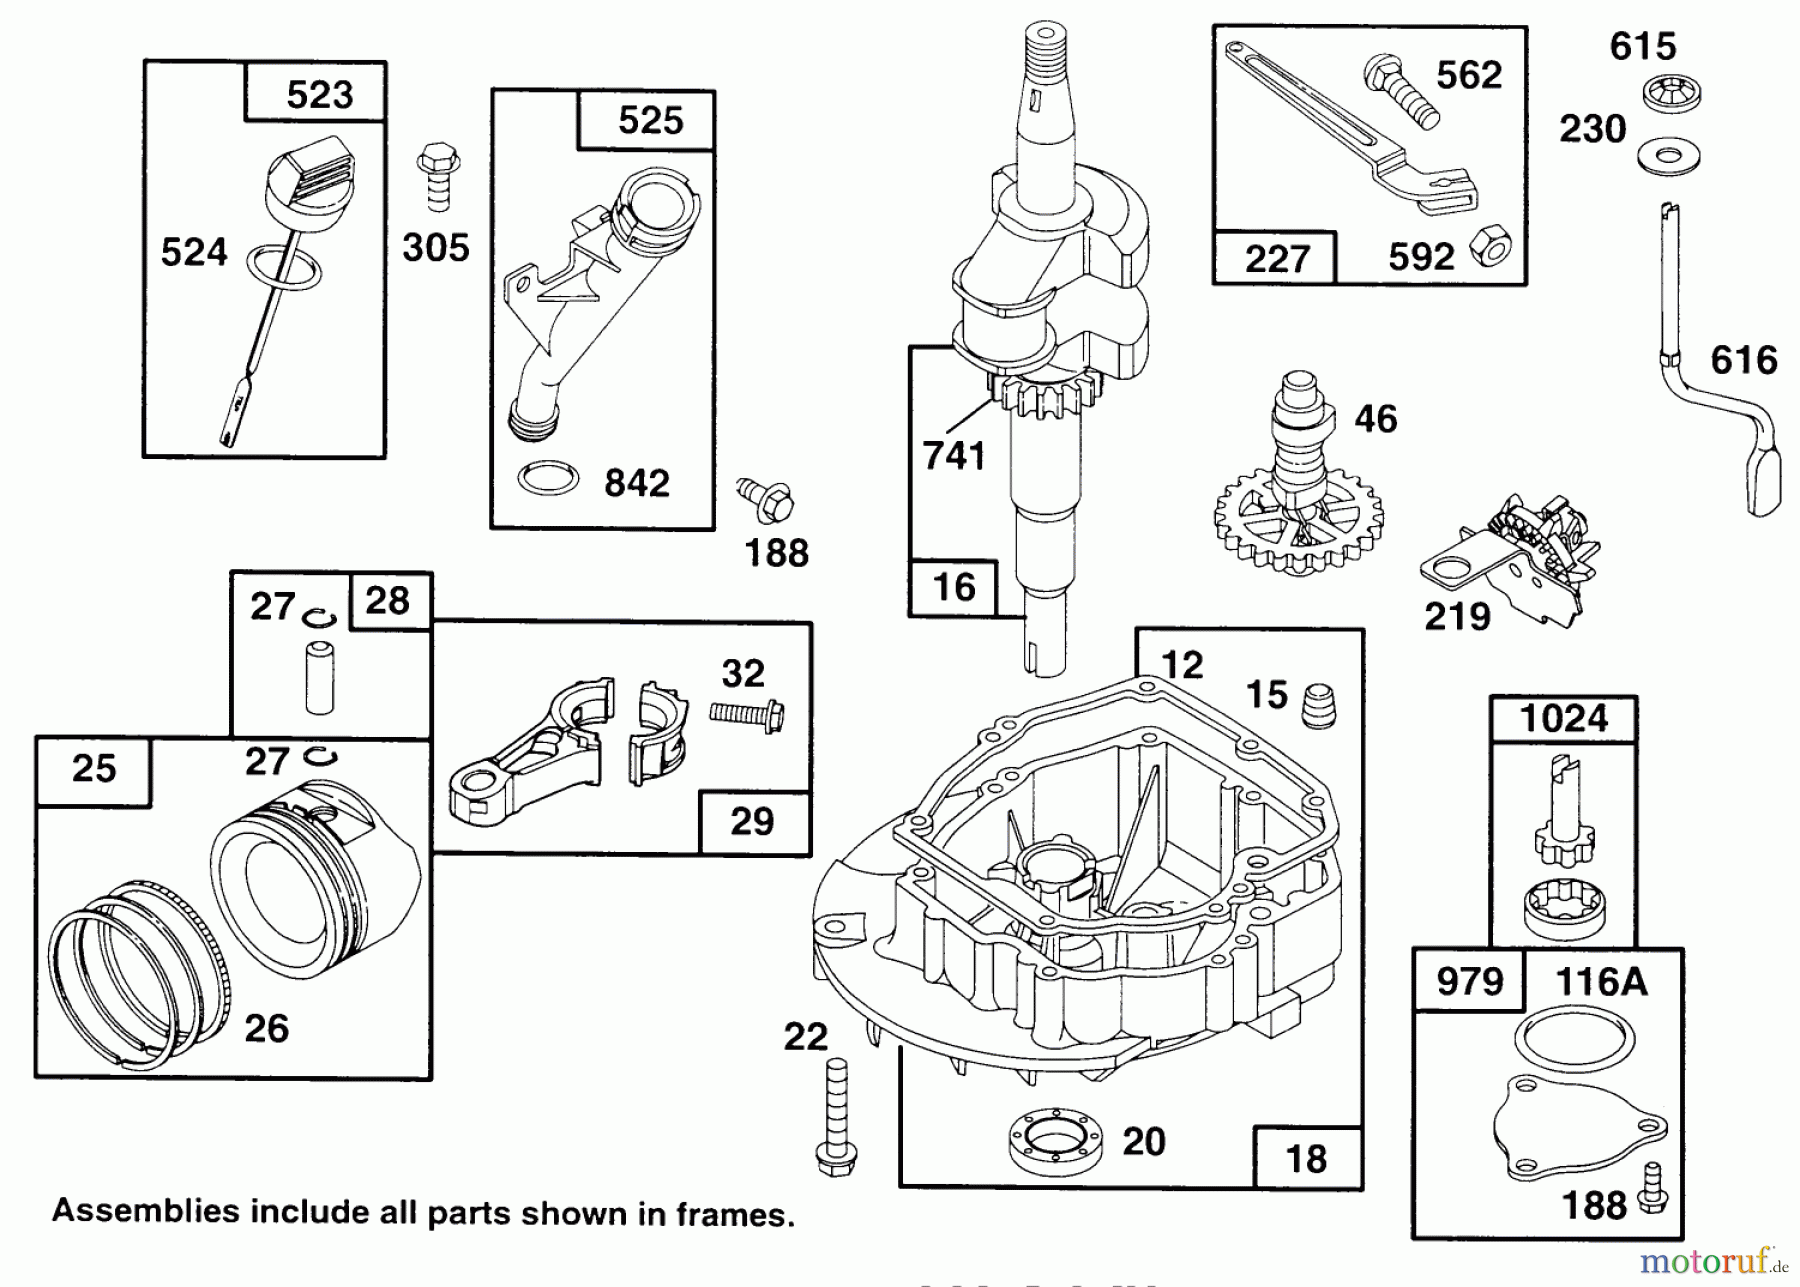  Toro Neu Mowers, Walk-Behind Seite 2 22153BC - Toro Lawnmower, 1995 (5900001-5999999) ENGINE GTS 150 #2